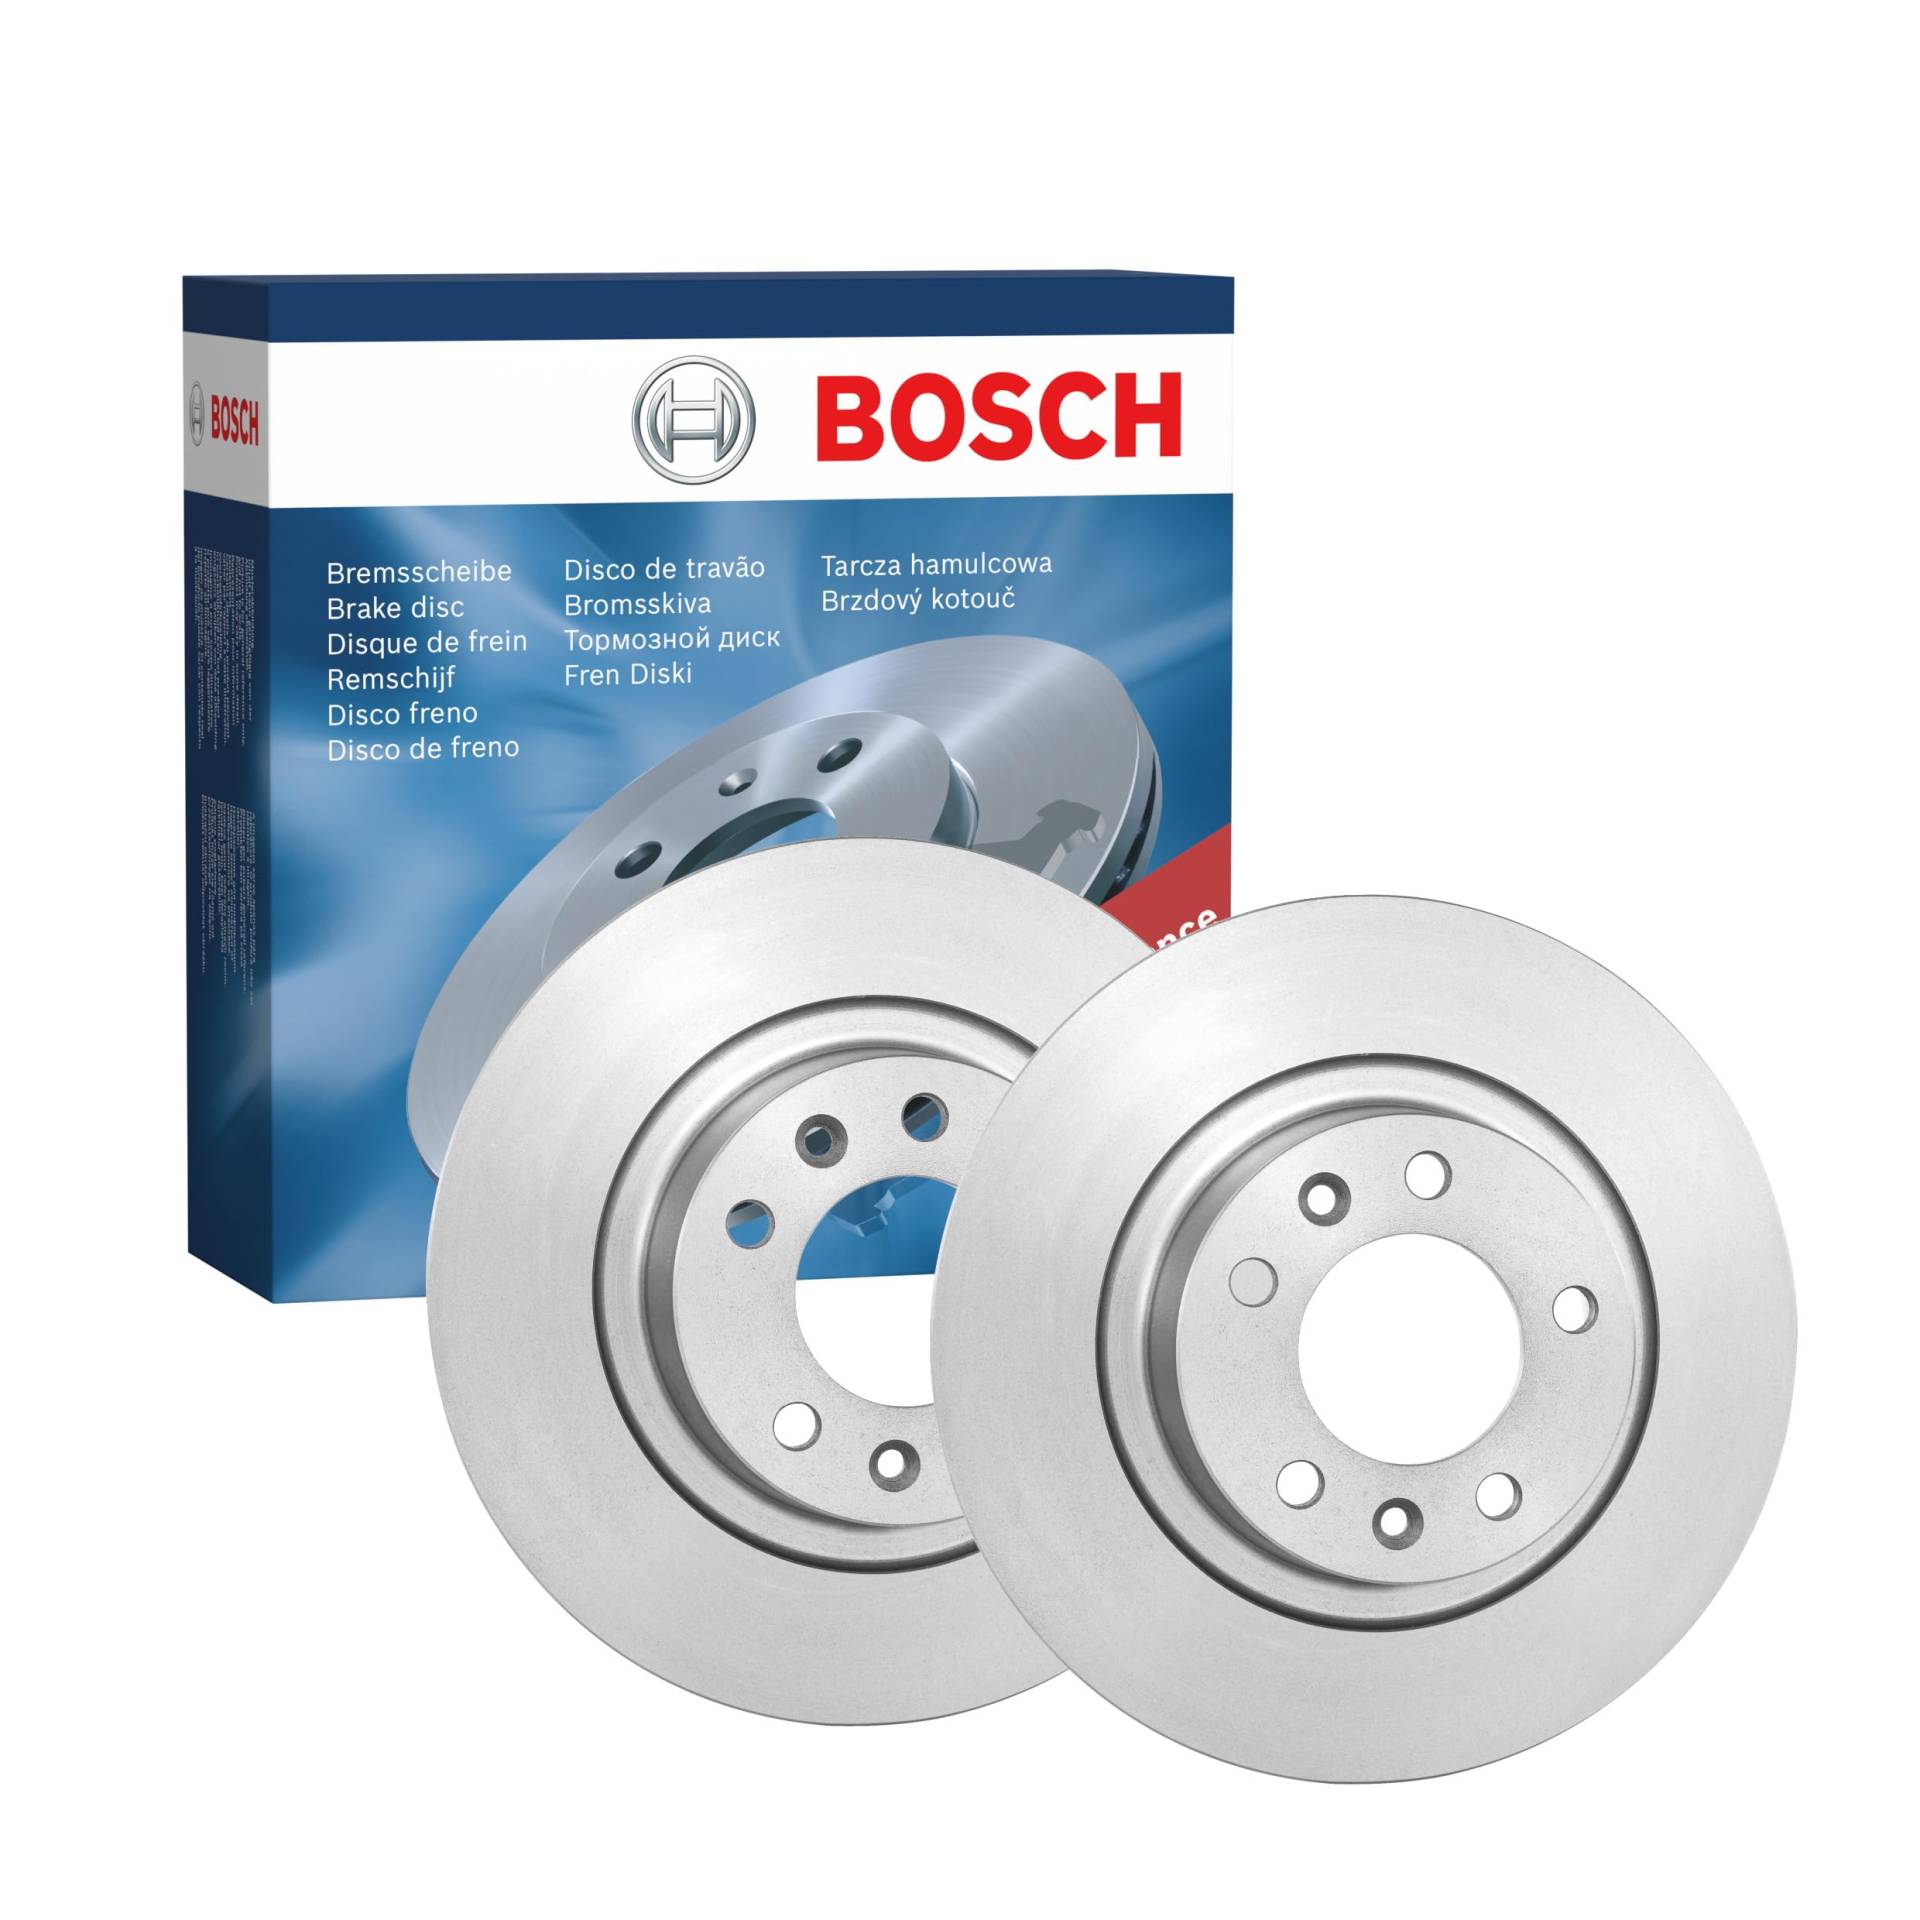 Bosch BD1246 Bremsscheiben - Hinterachse - ECE-R90 Zertifizierung - zwei Bremsscheiben pro Set von Bosch Automotive